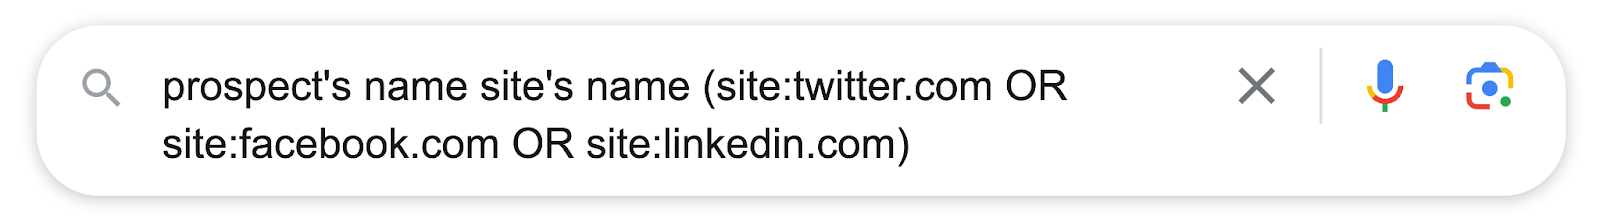 prospect's name site's name (site:twitter.com OR
site:facebook.com OR site:linkedin.com)

X

fo)